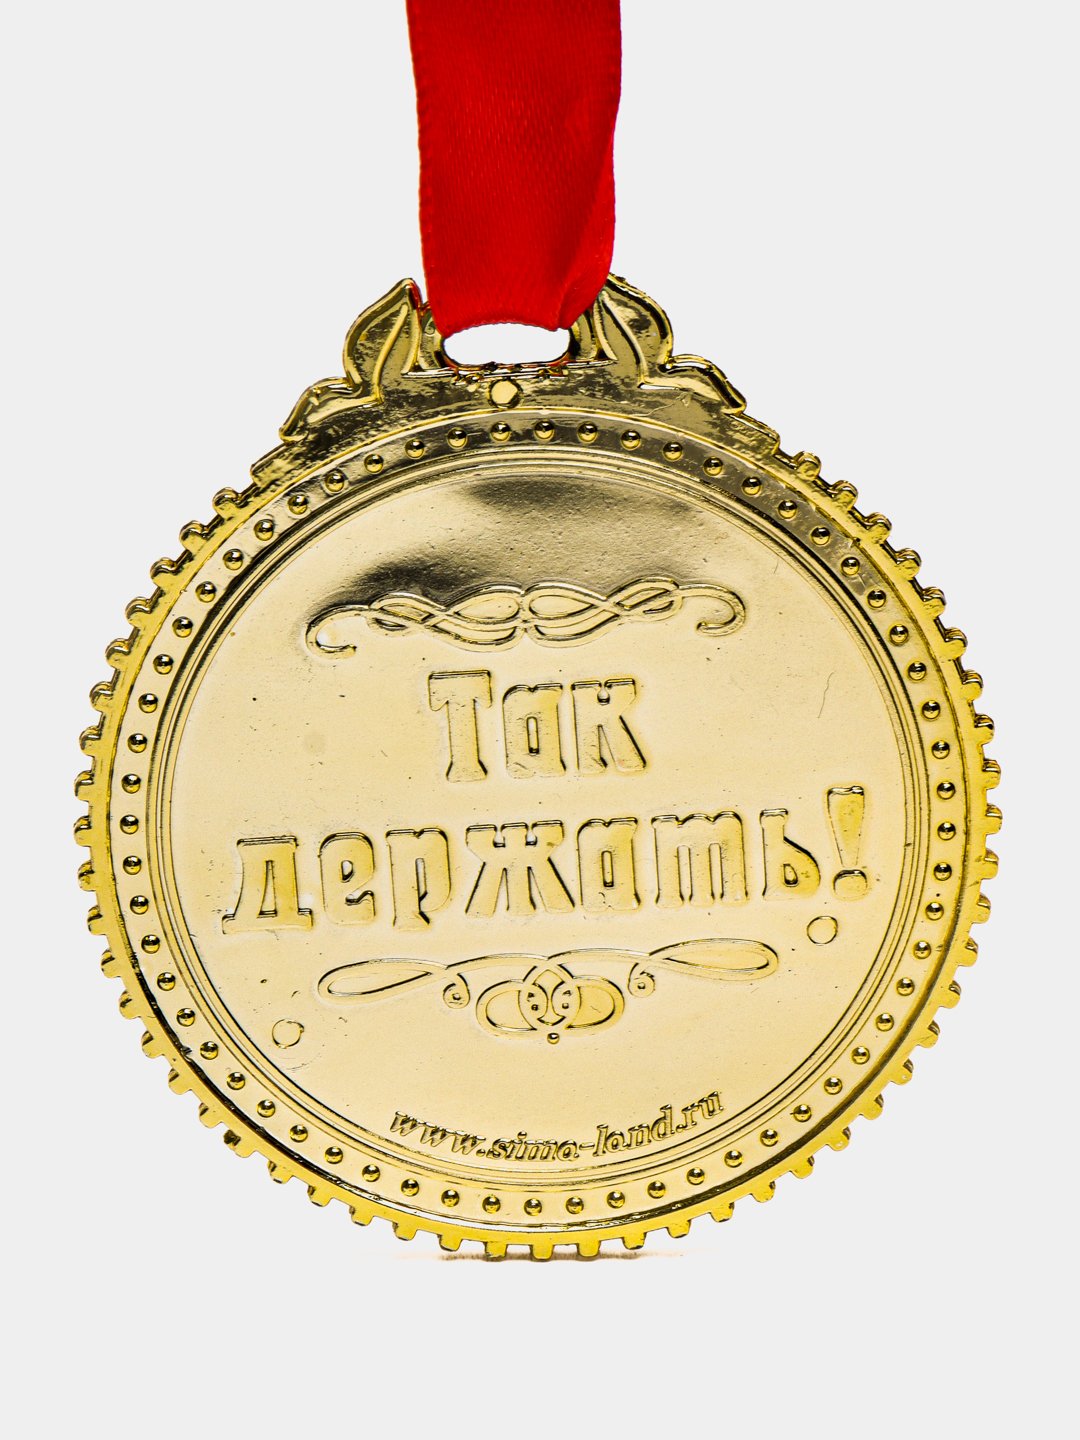 Юбилейная медаль «60 лет Вооружённых Сил СССР» — Википедия